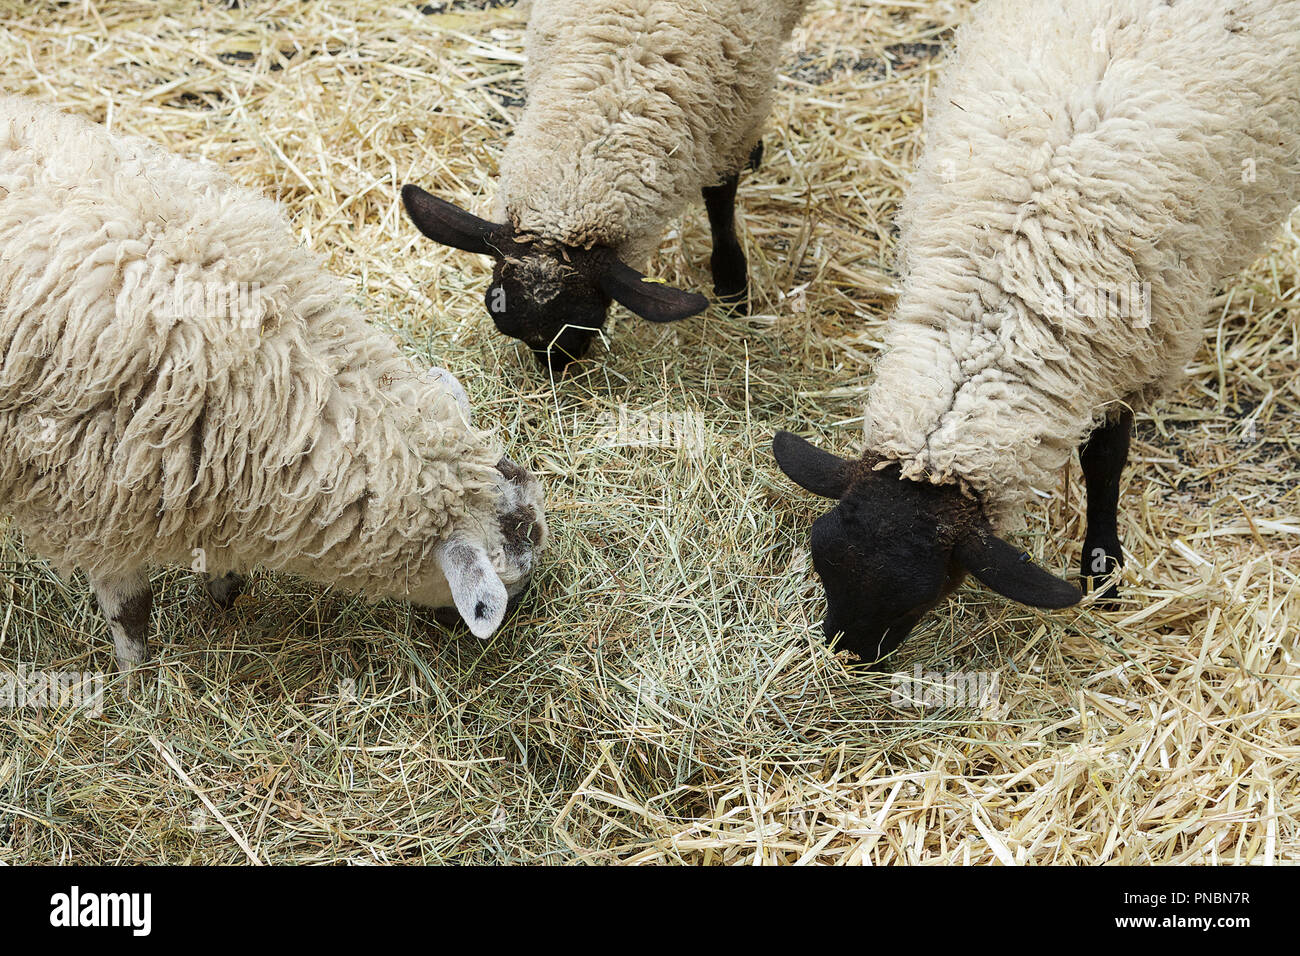 Großbritannien Landwirtschaft, Schaf grasend, Landwirtschaft Schafe aus dem Vereinigten Königreich. Stockfoto